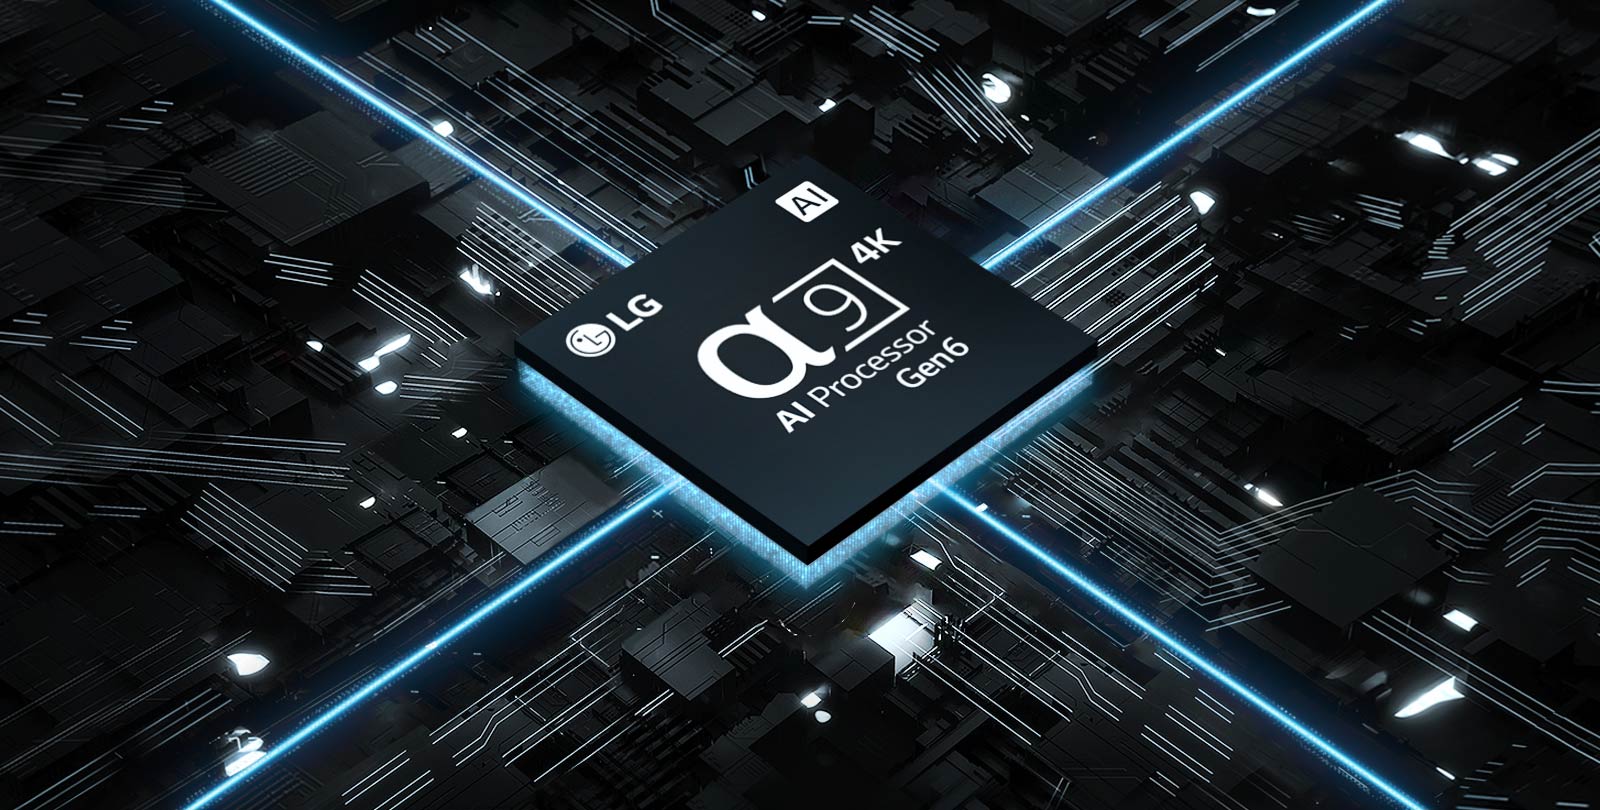 A videóban a 6. generációs α9 AI 4K processzor látható egy nyomtatott áramkörön. Az áramkör világít, és a chip kék fényt áraszt, ami a teljesítményét jelképezi. 